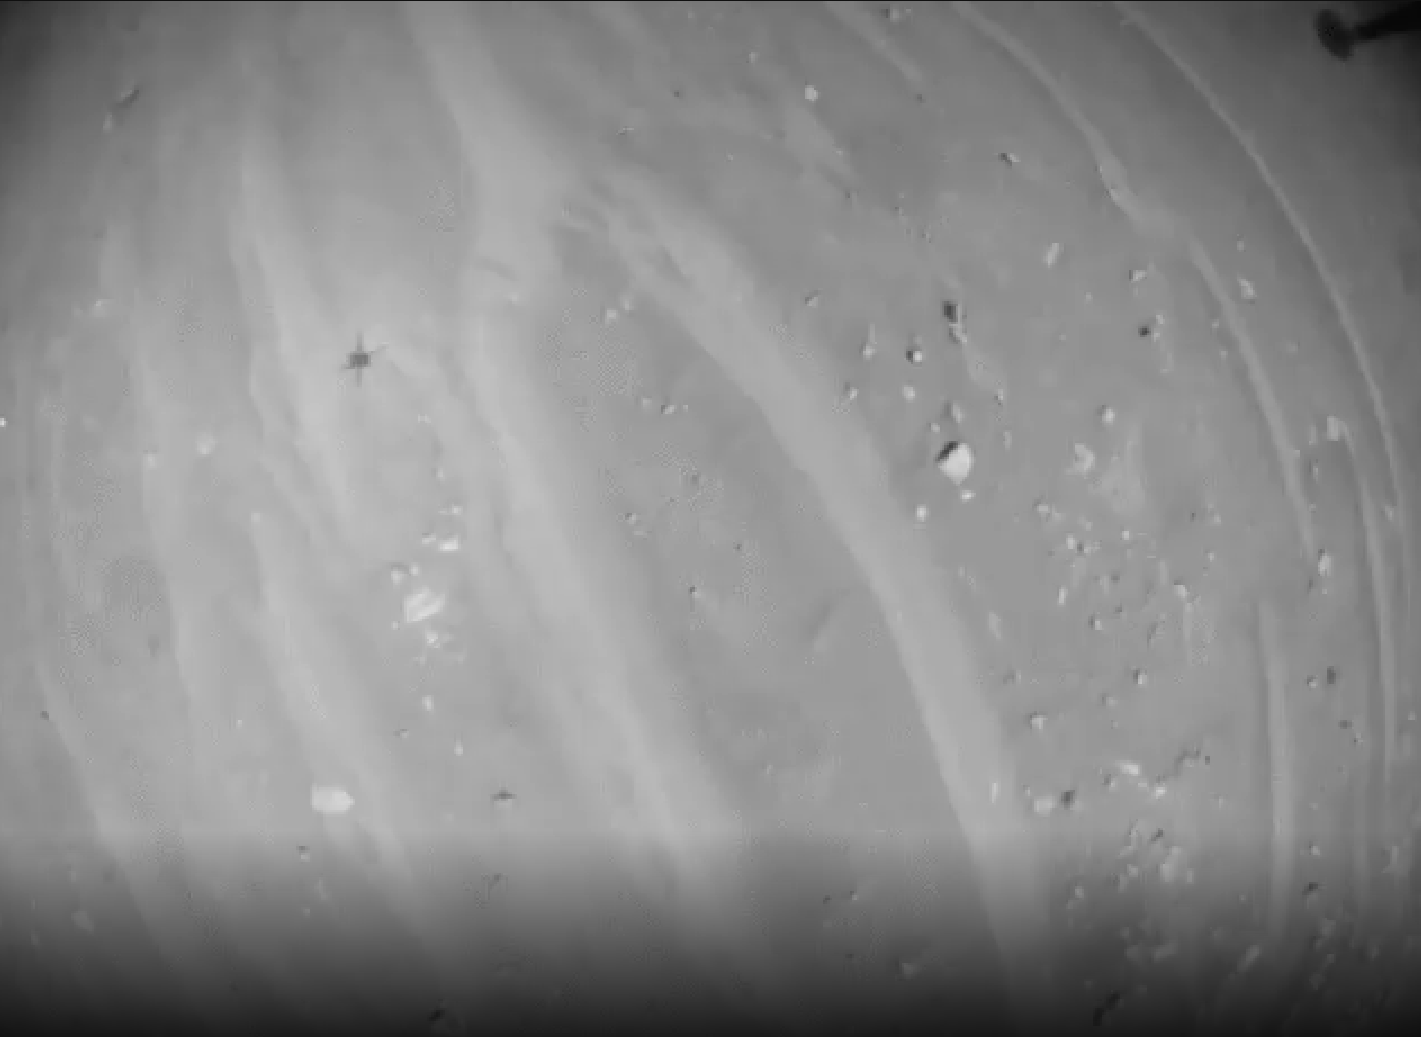 NASA 的機智號火星直升機拍攝了創紀錄的飛行視頻